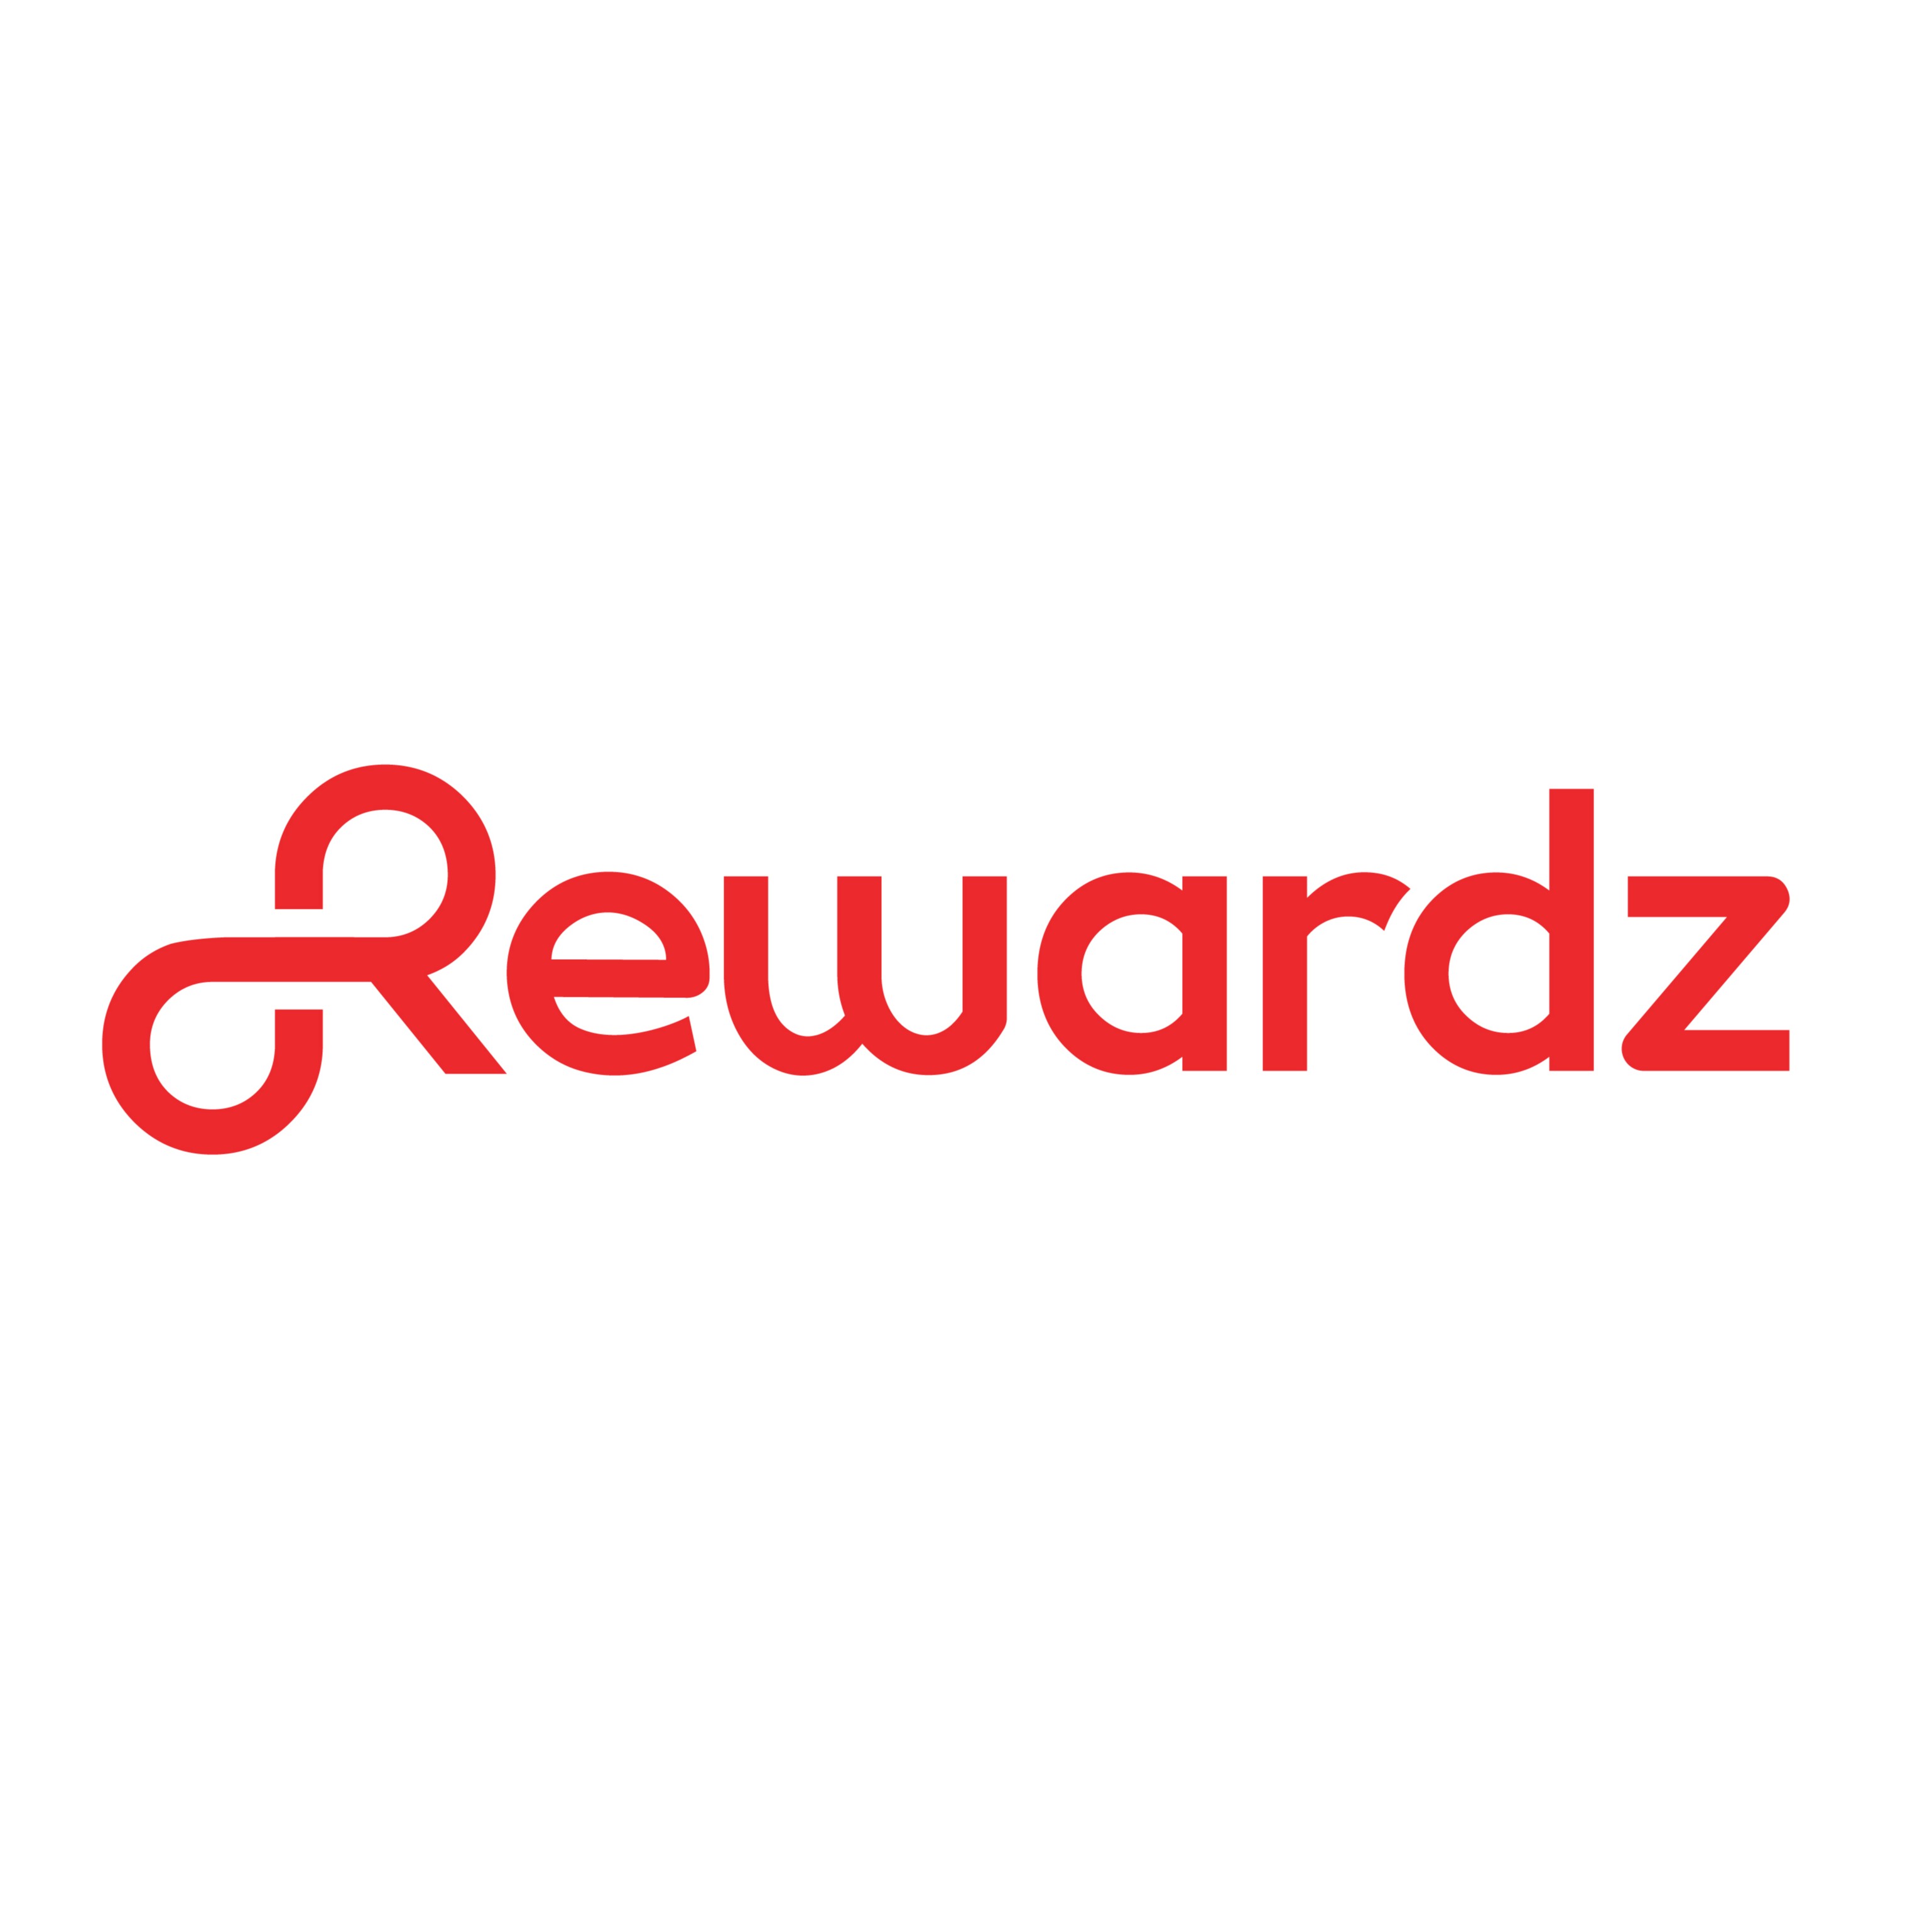 Rewardz Pte Ltd